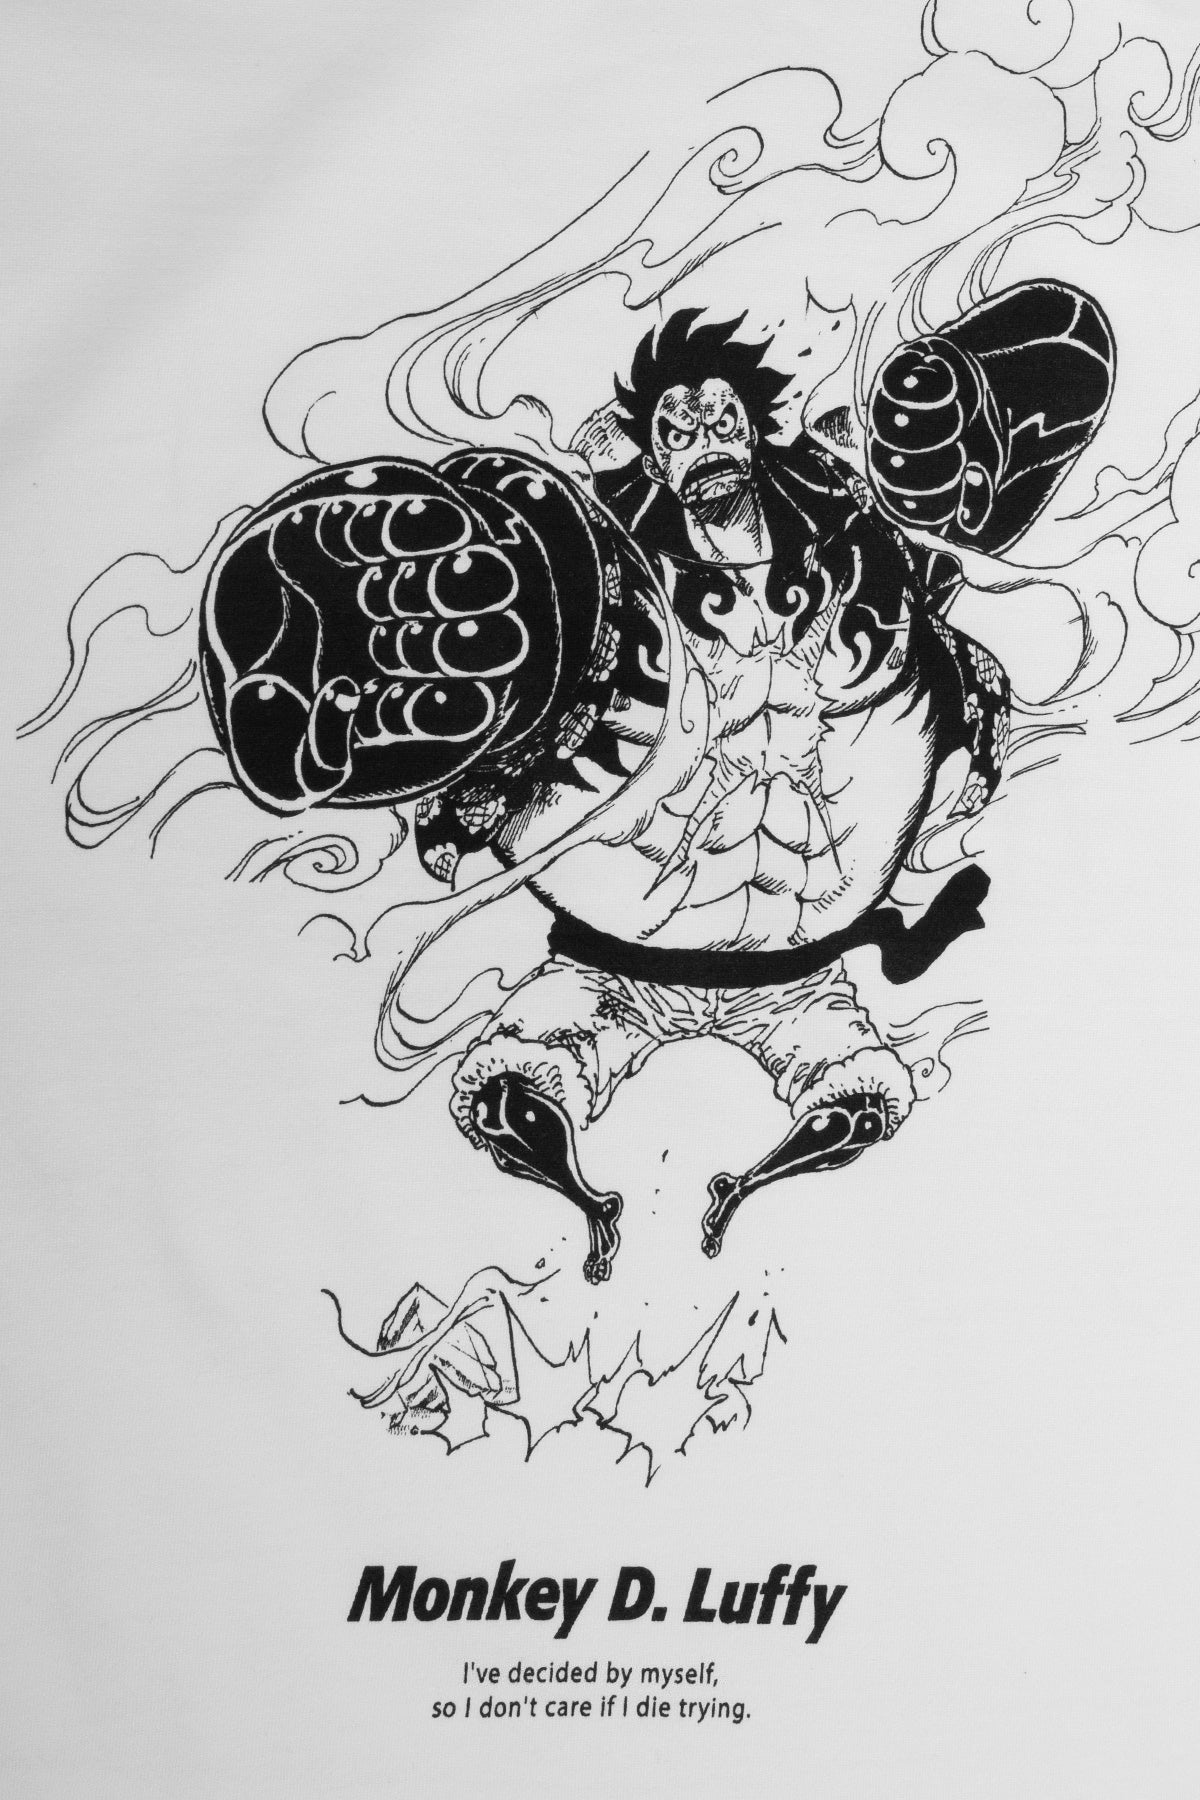 T-Shirt One Piece Luffy Gear Fourth Snake Man OMN1111